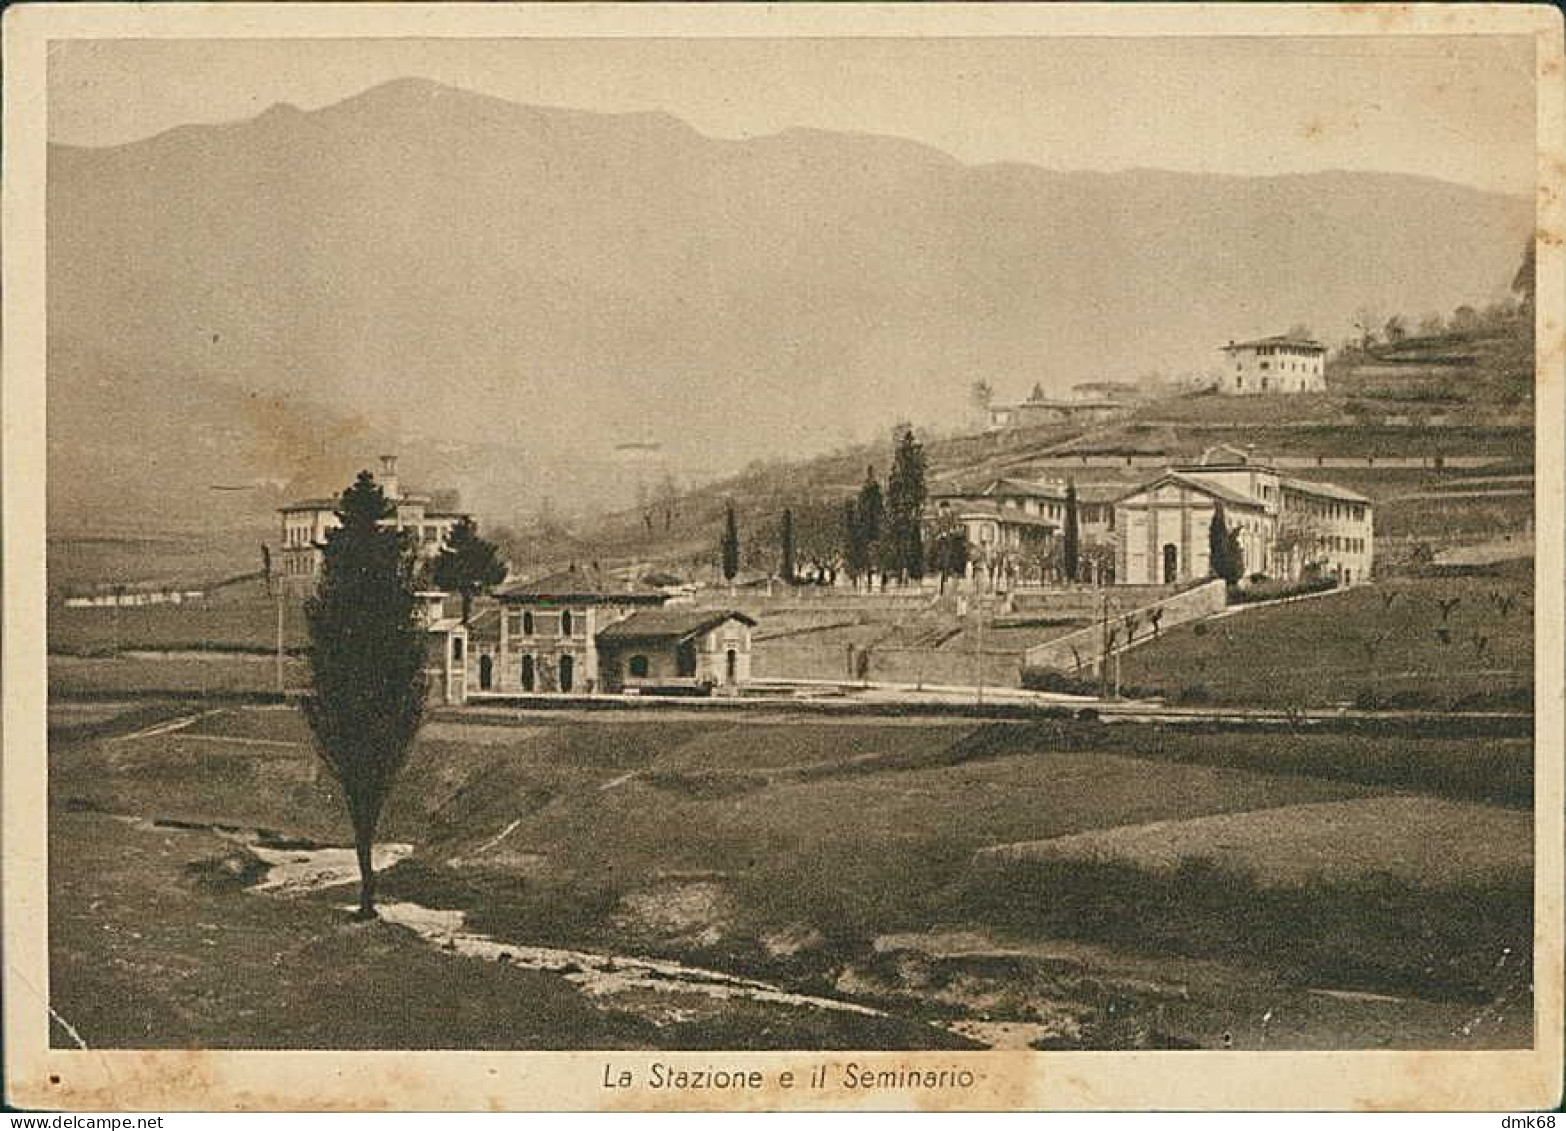 PONTERANICA ( BERGAMO ) SEMINARIO EUCARISTICO VALBONA . LA STAZIONE E IL SEMINARIO - 1940s (20657) - Bergamo